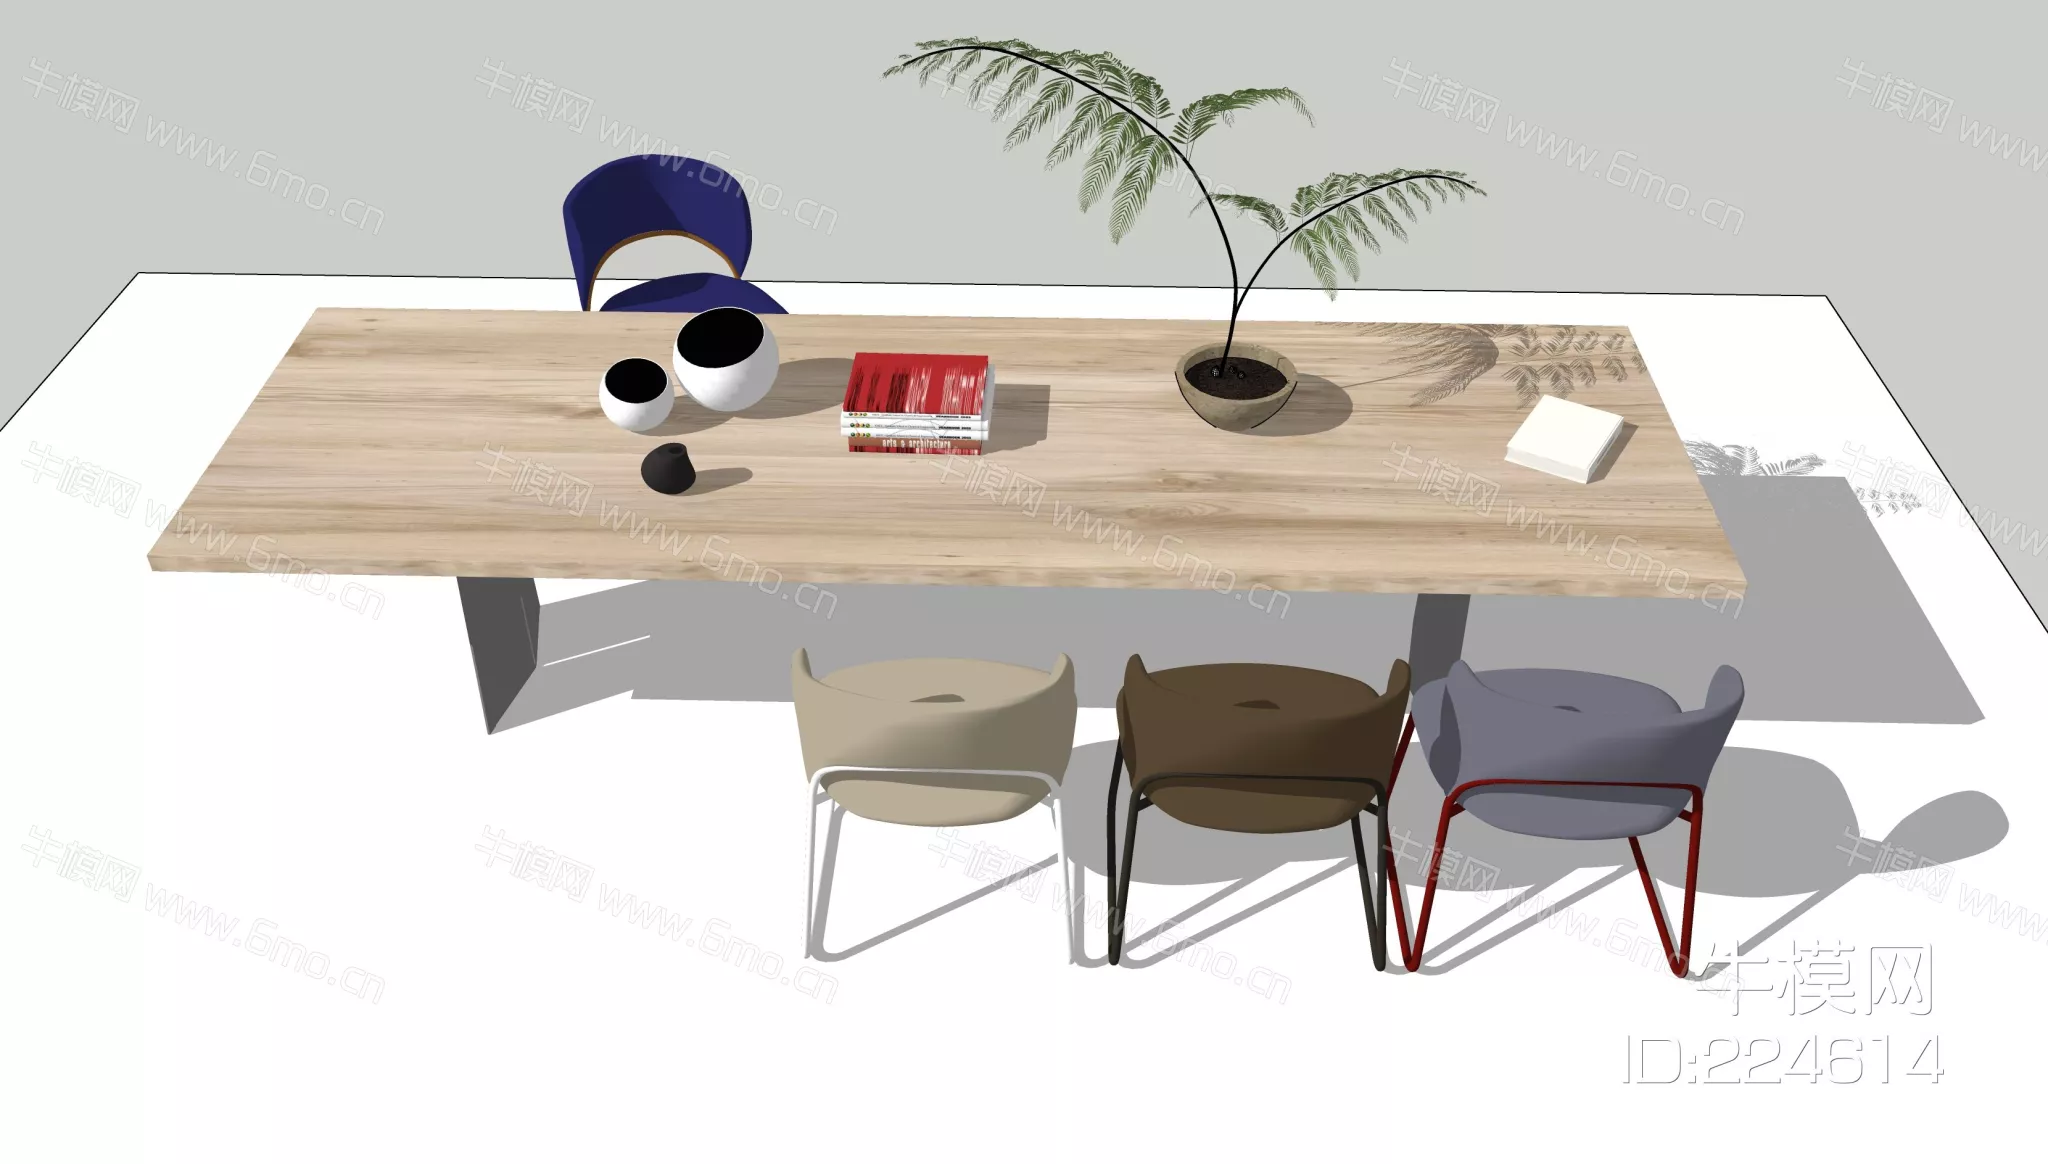 MODERN DINING TABLE SET - SKETCHUP 3D MODEL - ENSCAPE - 224614